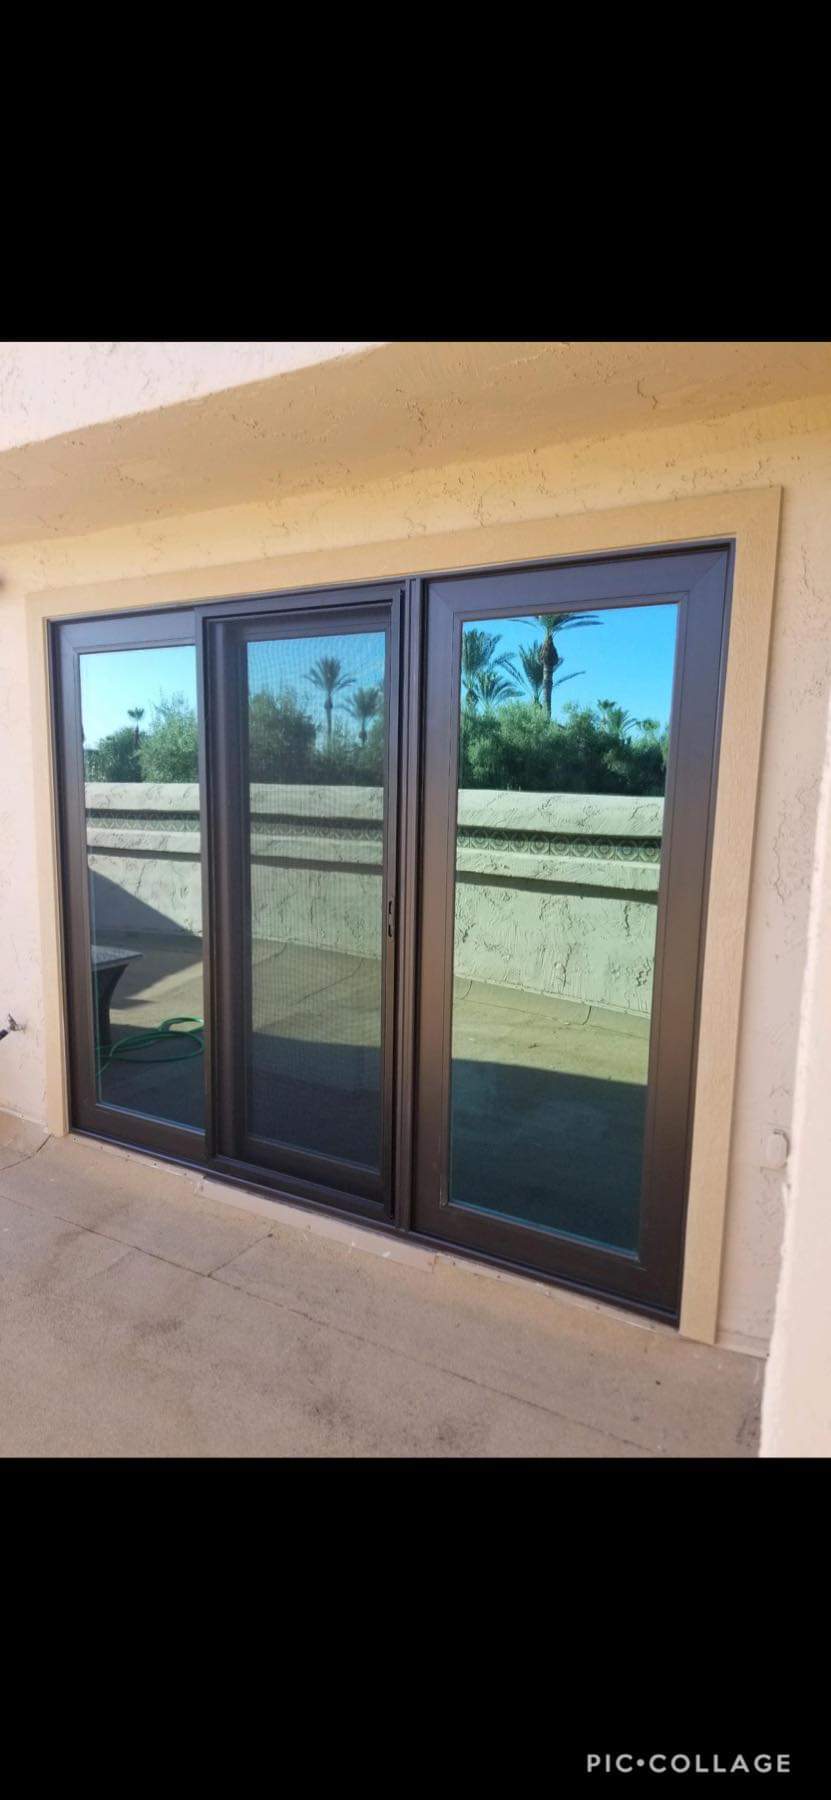 Arizona Window and Door in Scottsdale and Tucson showing multipanel door